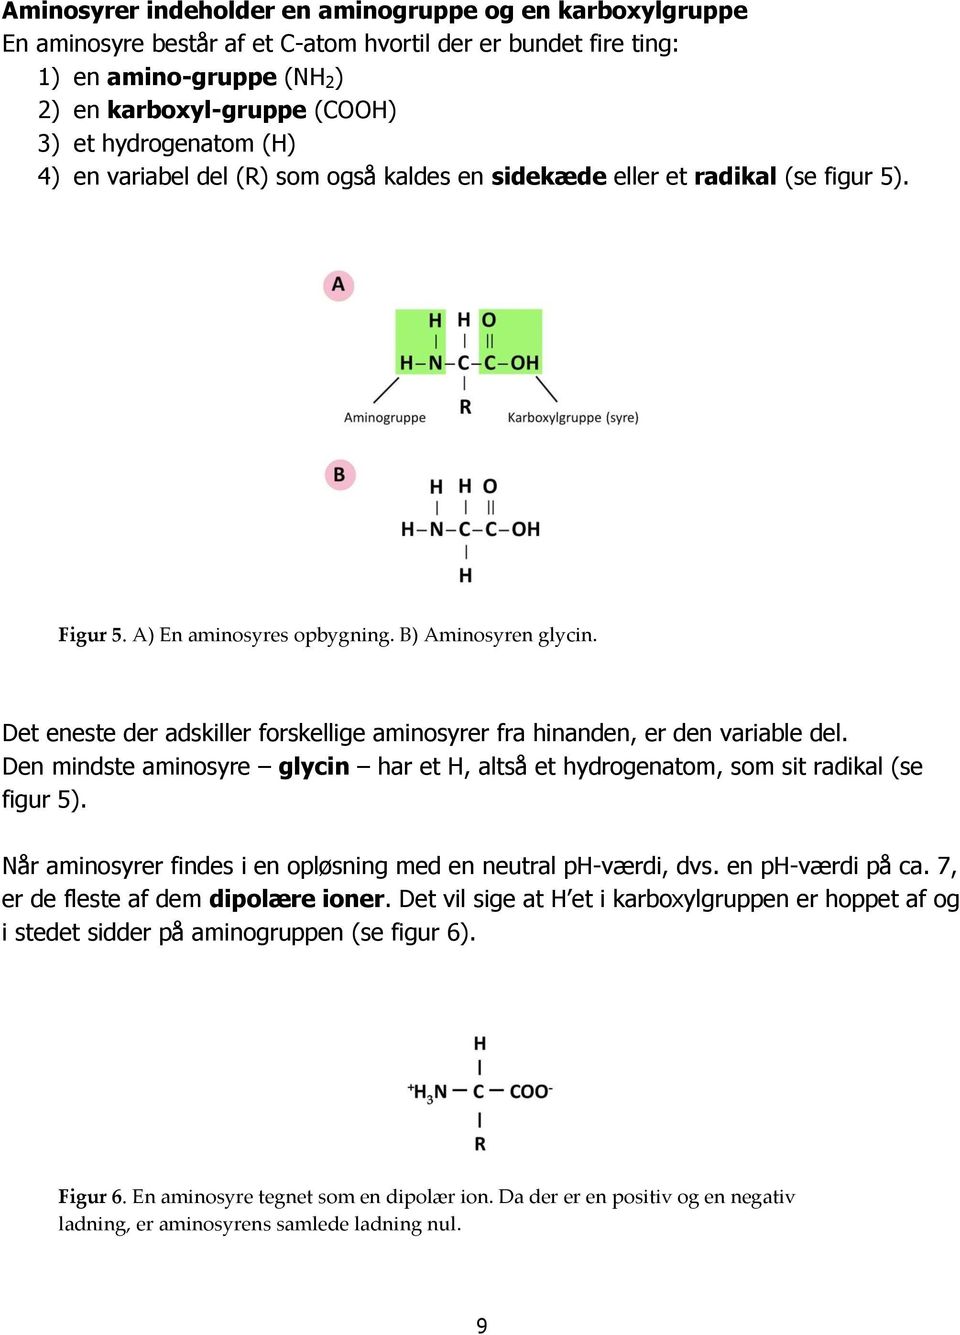 Det eneste der adskiller forskellige aminosyrer fra hinanden, er den variable del. Den mindste aminosyre glycin har et H, altså et hydrogenatom, som sit radikal (se figur 5).